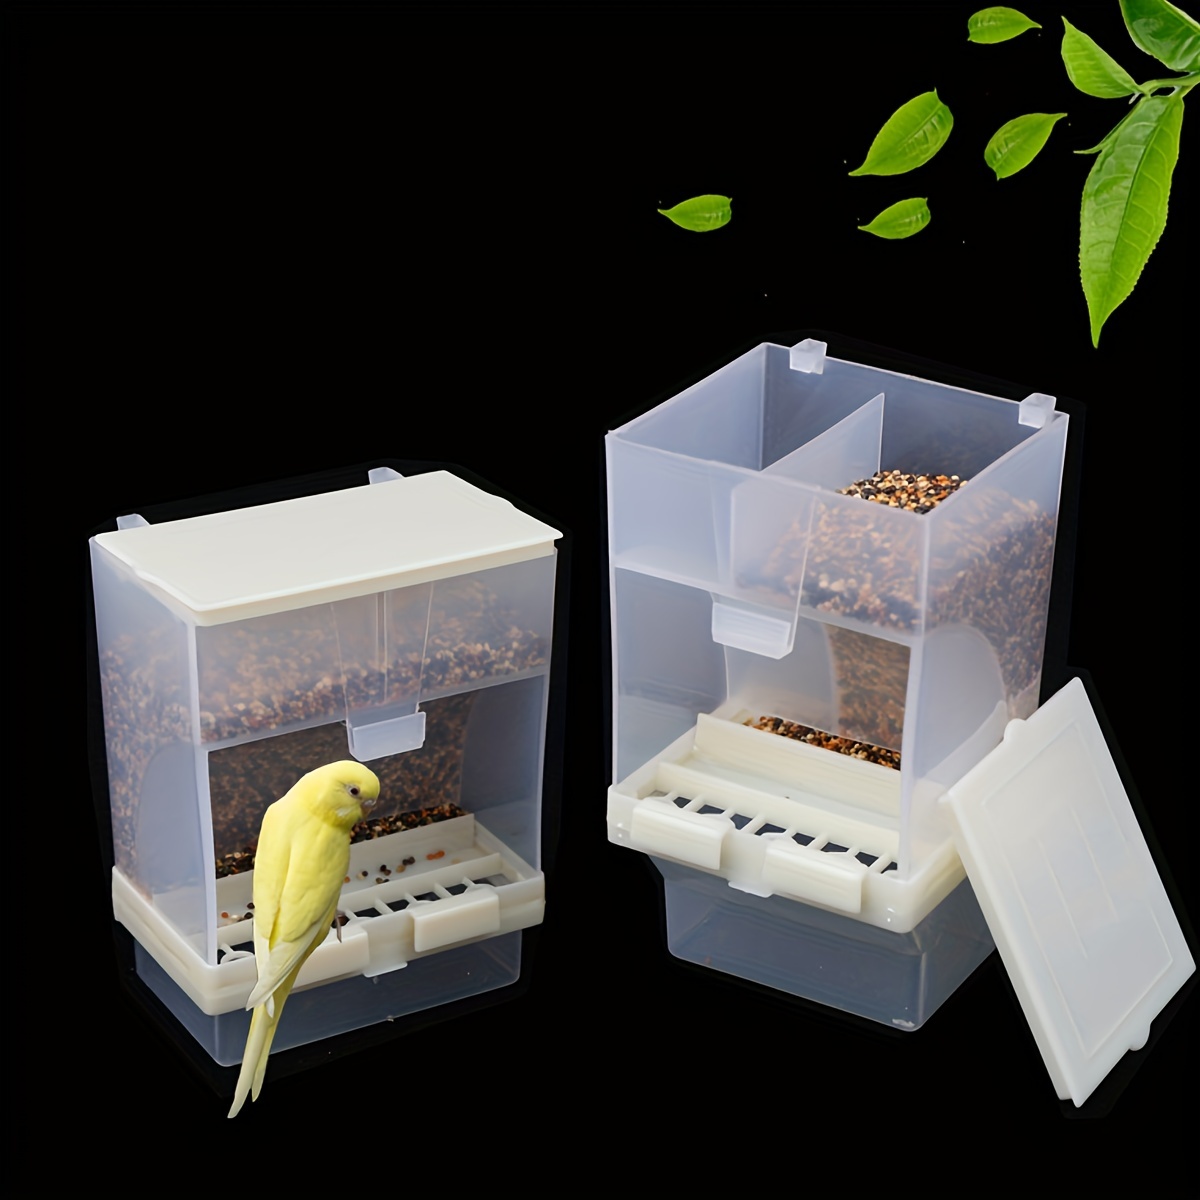 Mangeoire automatique pour oiseaux résistante aux éclaboussures -  Accessoires pour cage à oiseaux - Conteneur de nourriture pour